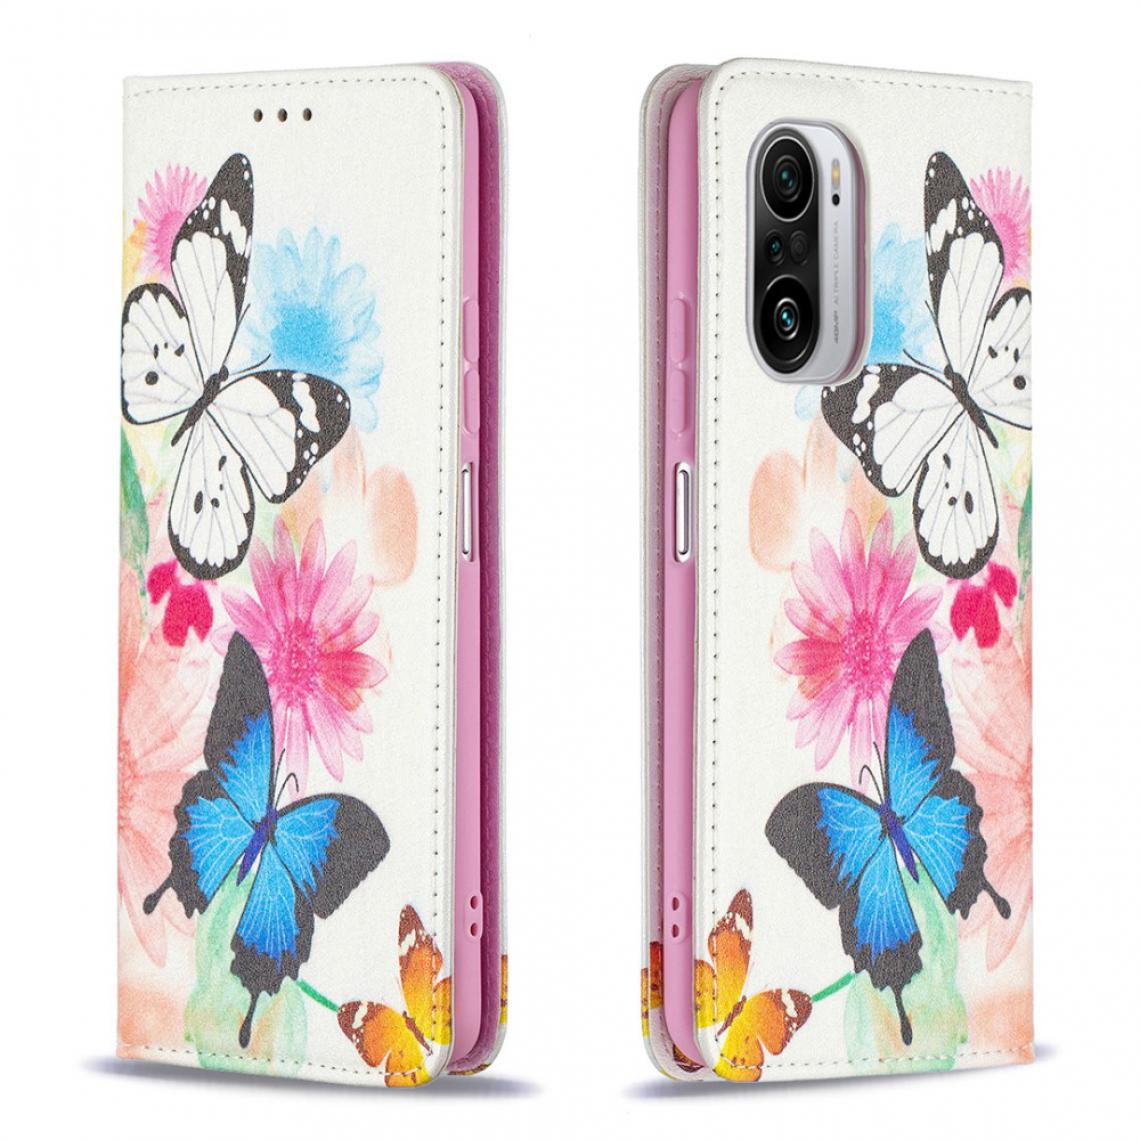 Other - Etui en PU Impression de motifs élégants Conception auto-absorbée avec support papillons et fleurs pour votre Xiaomi Redmi K40/K40 Pro/Mi 11i/Poco F3 - Coque, étui smartphone